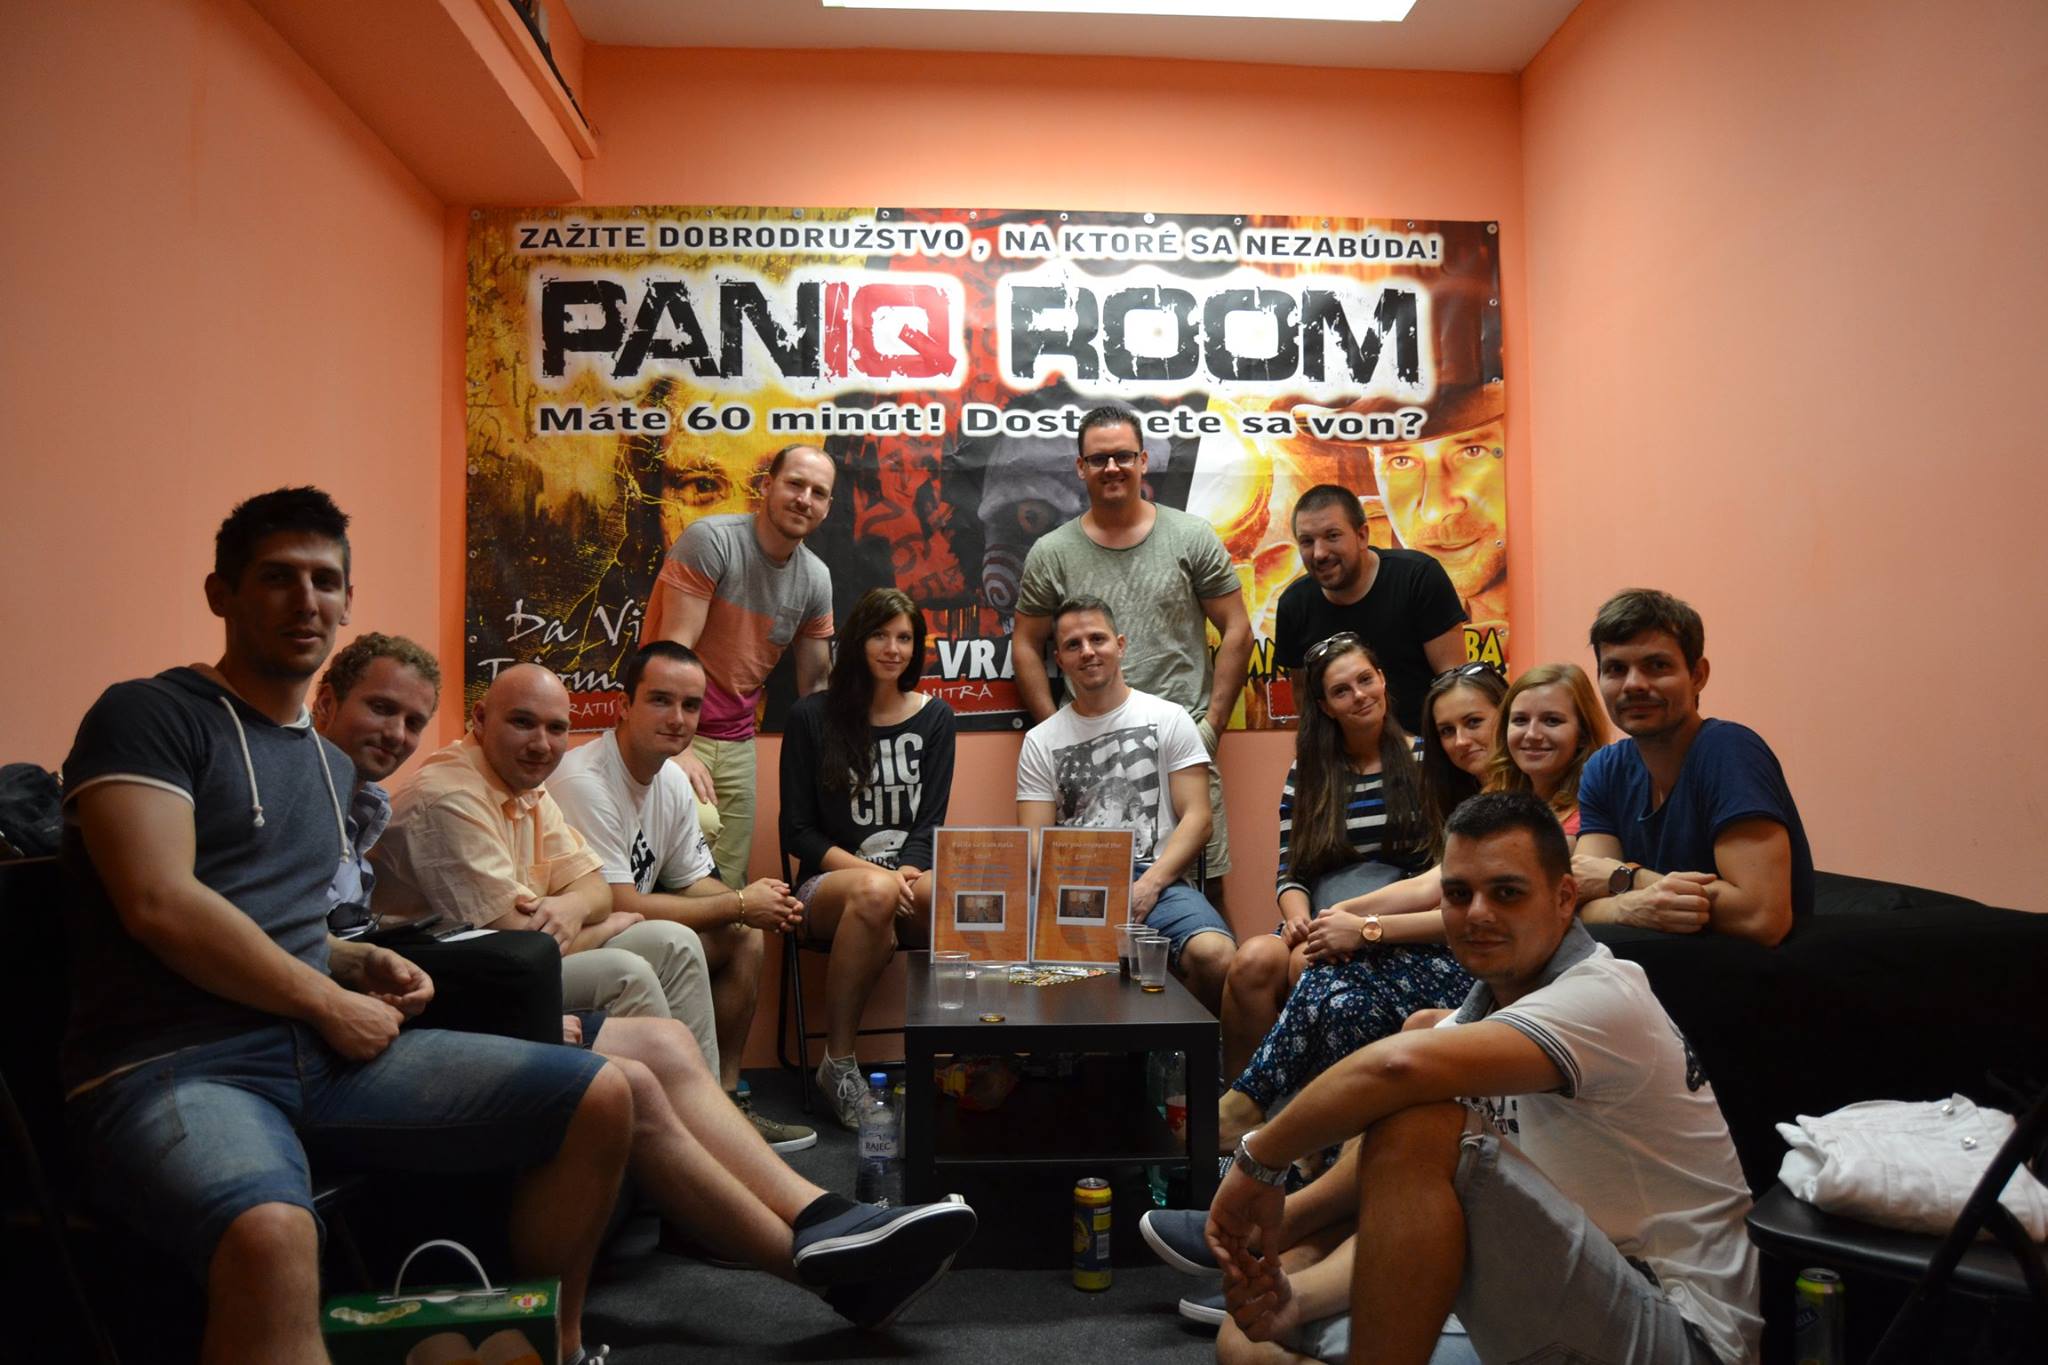 PanIQ room